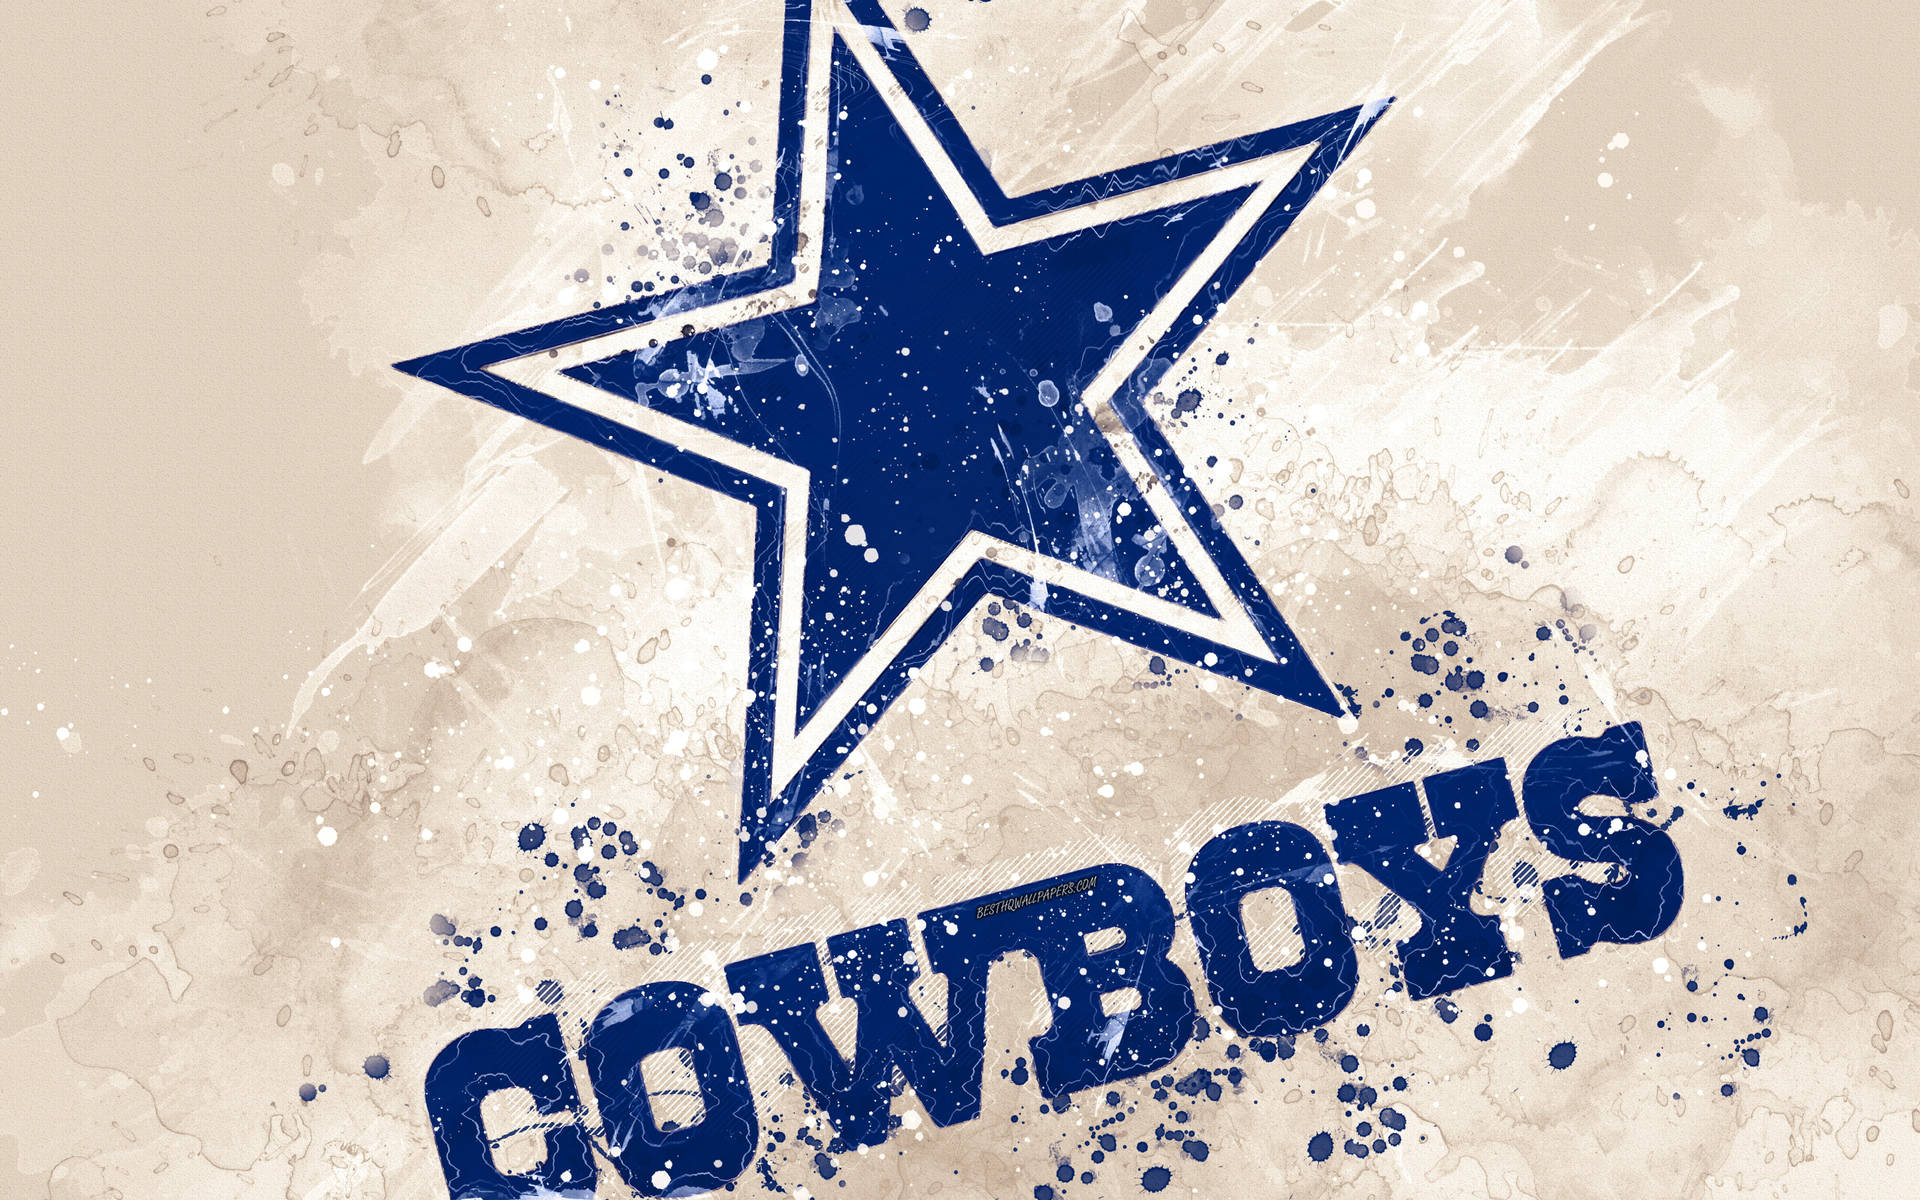 Dallas Cowboys Nfl Team Logo Background